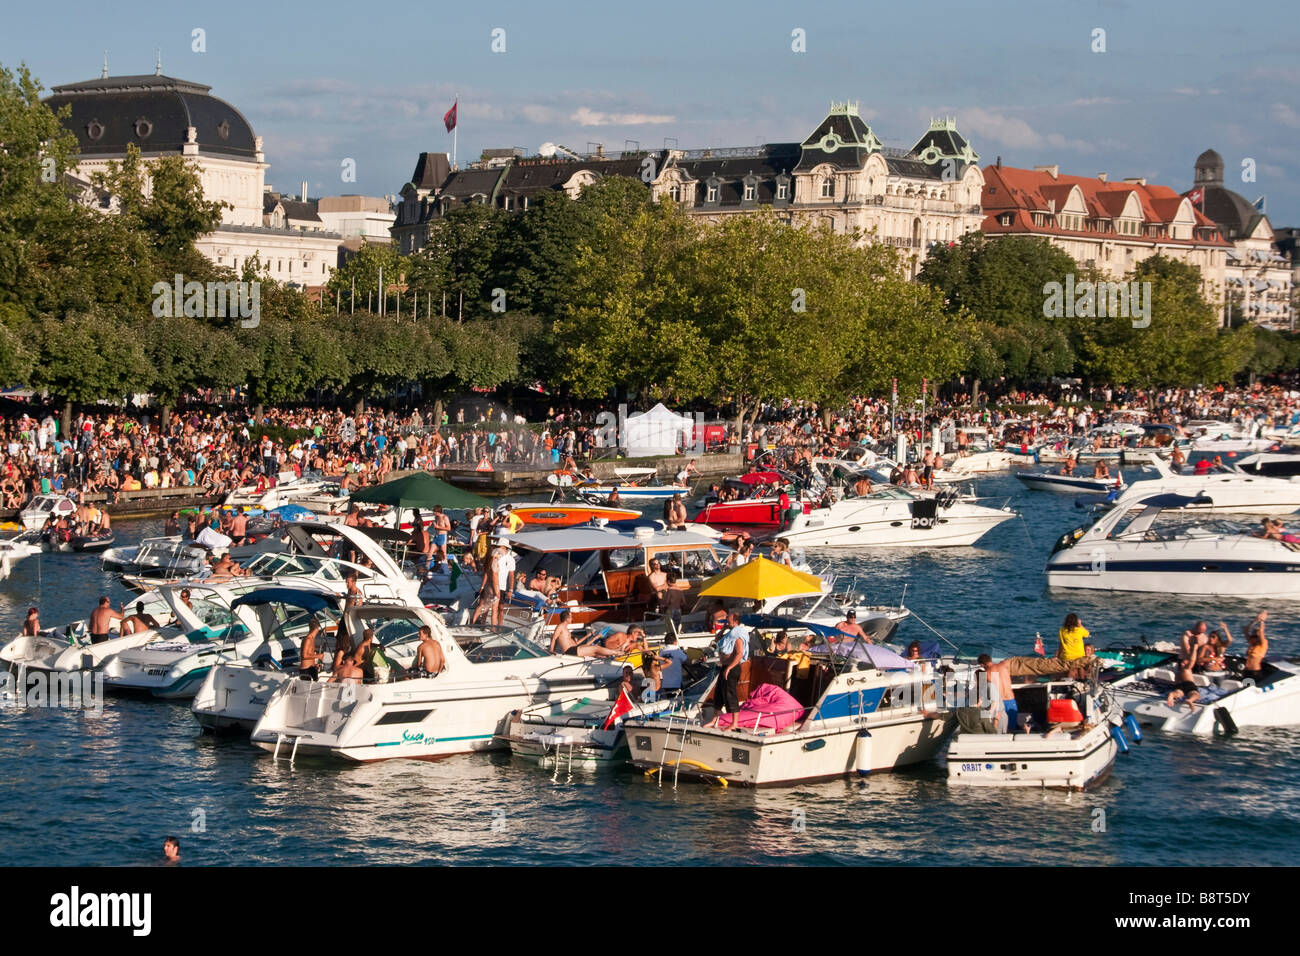 Switzerland Zurich street parade party boats on Zurich lake Stock Photo